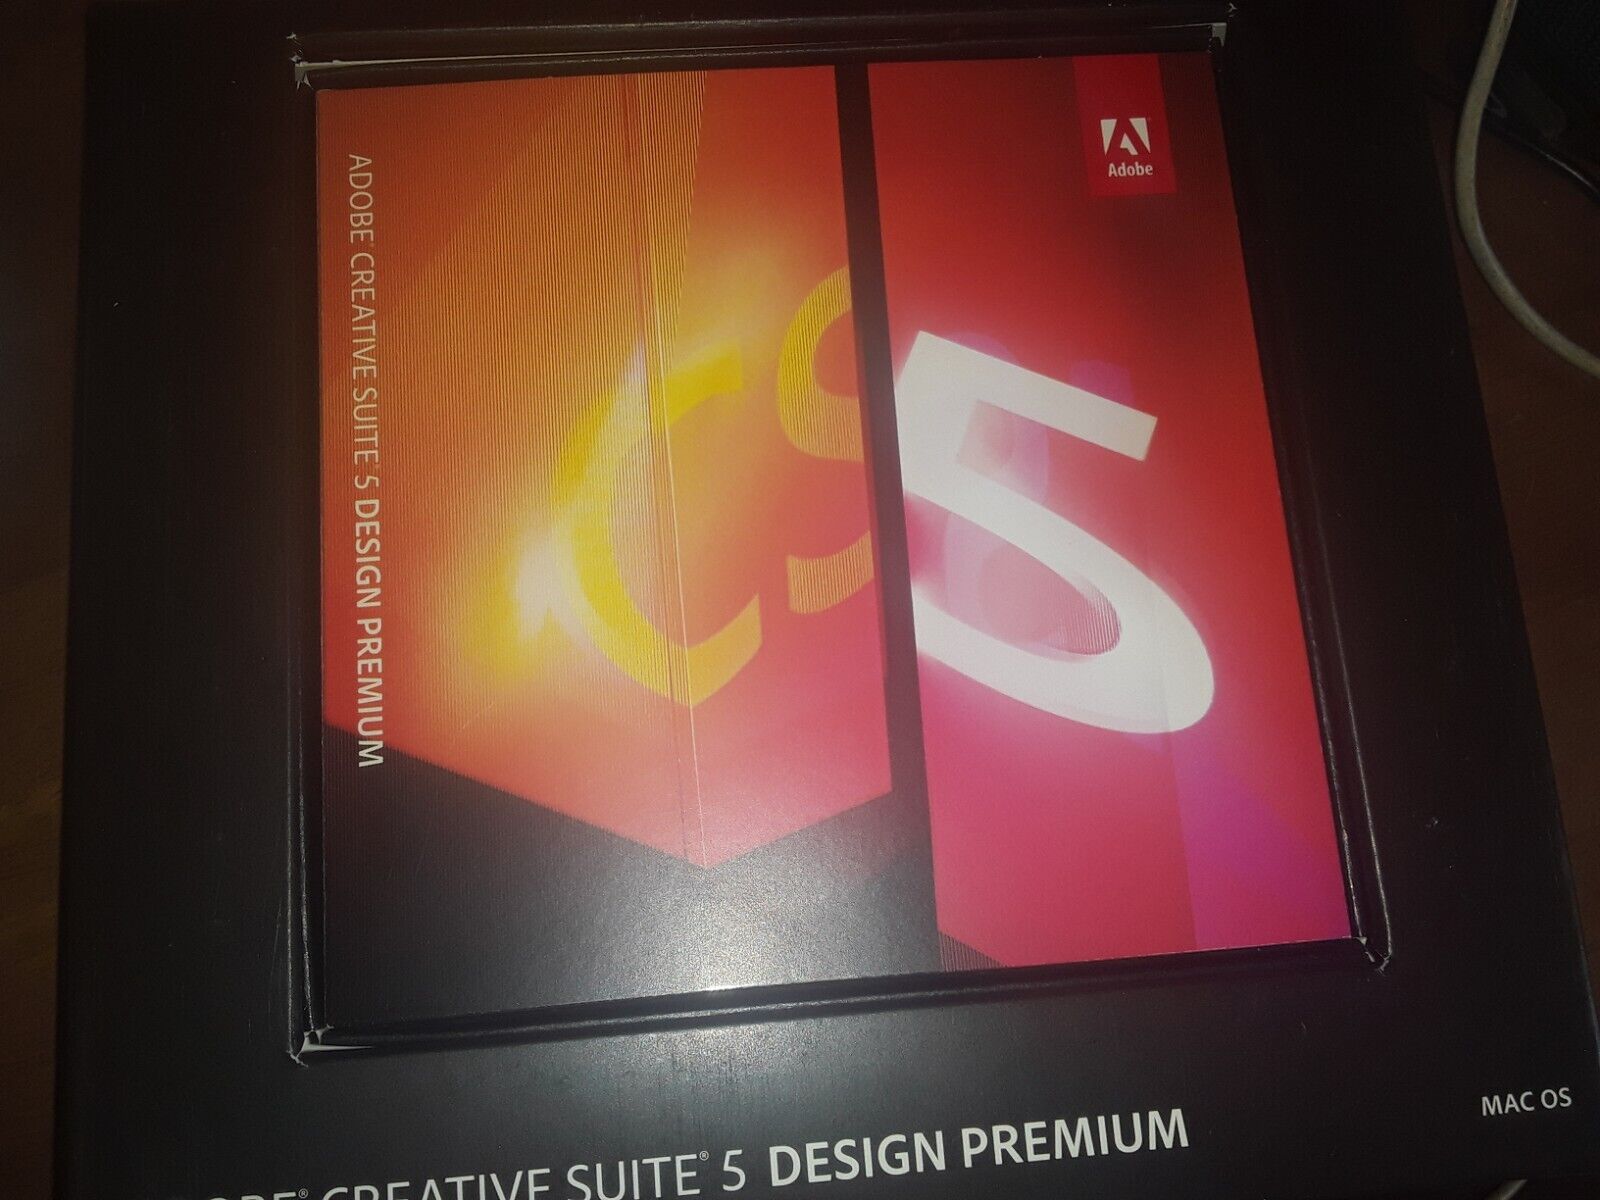 Retail Adobe Creative Suite 5 CS5 Design Premium + Acrobat 9 Pro Windows UPGRADE